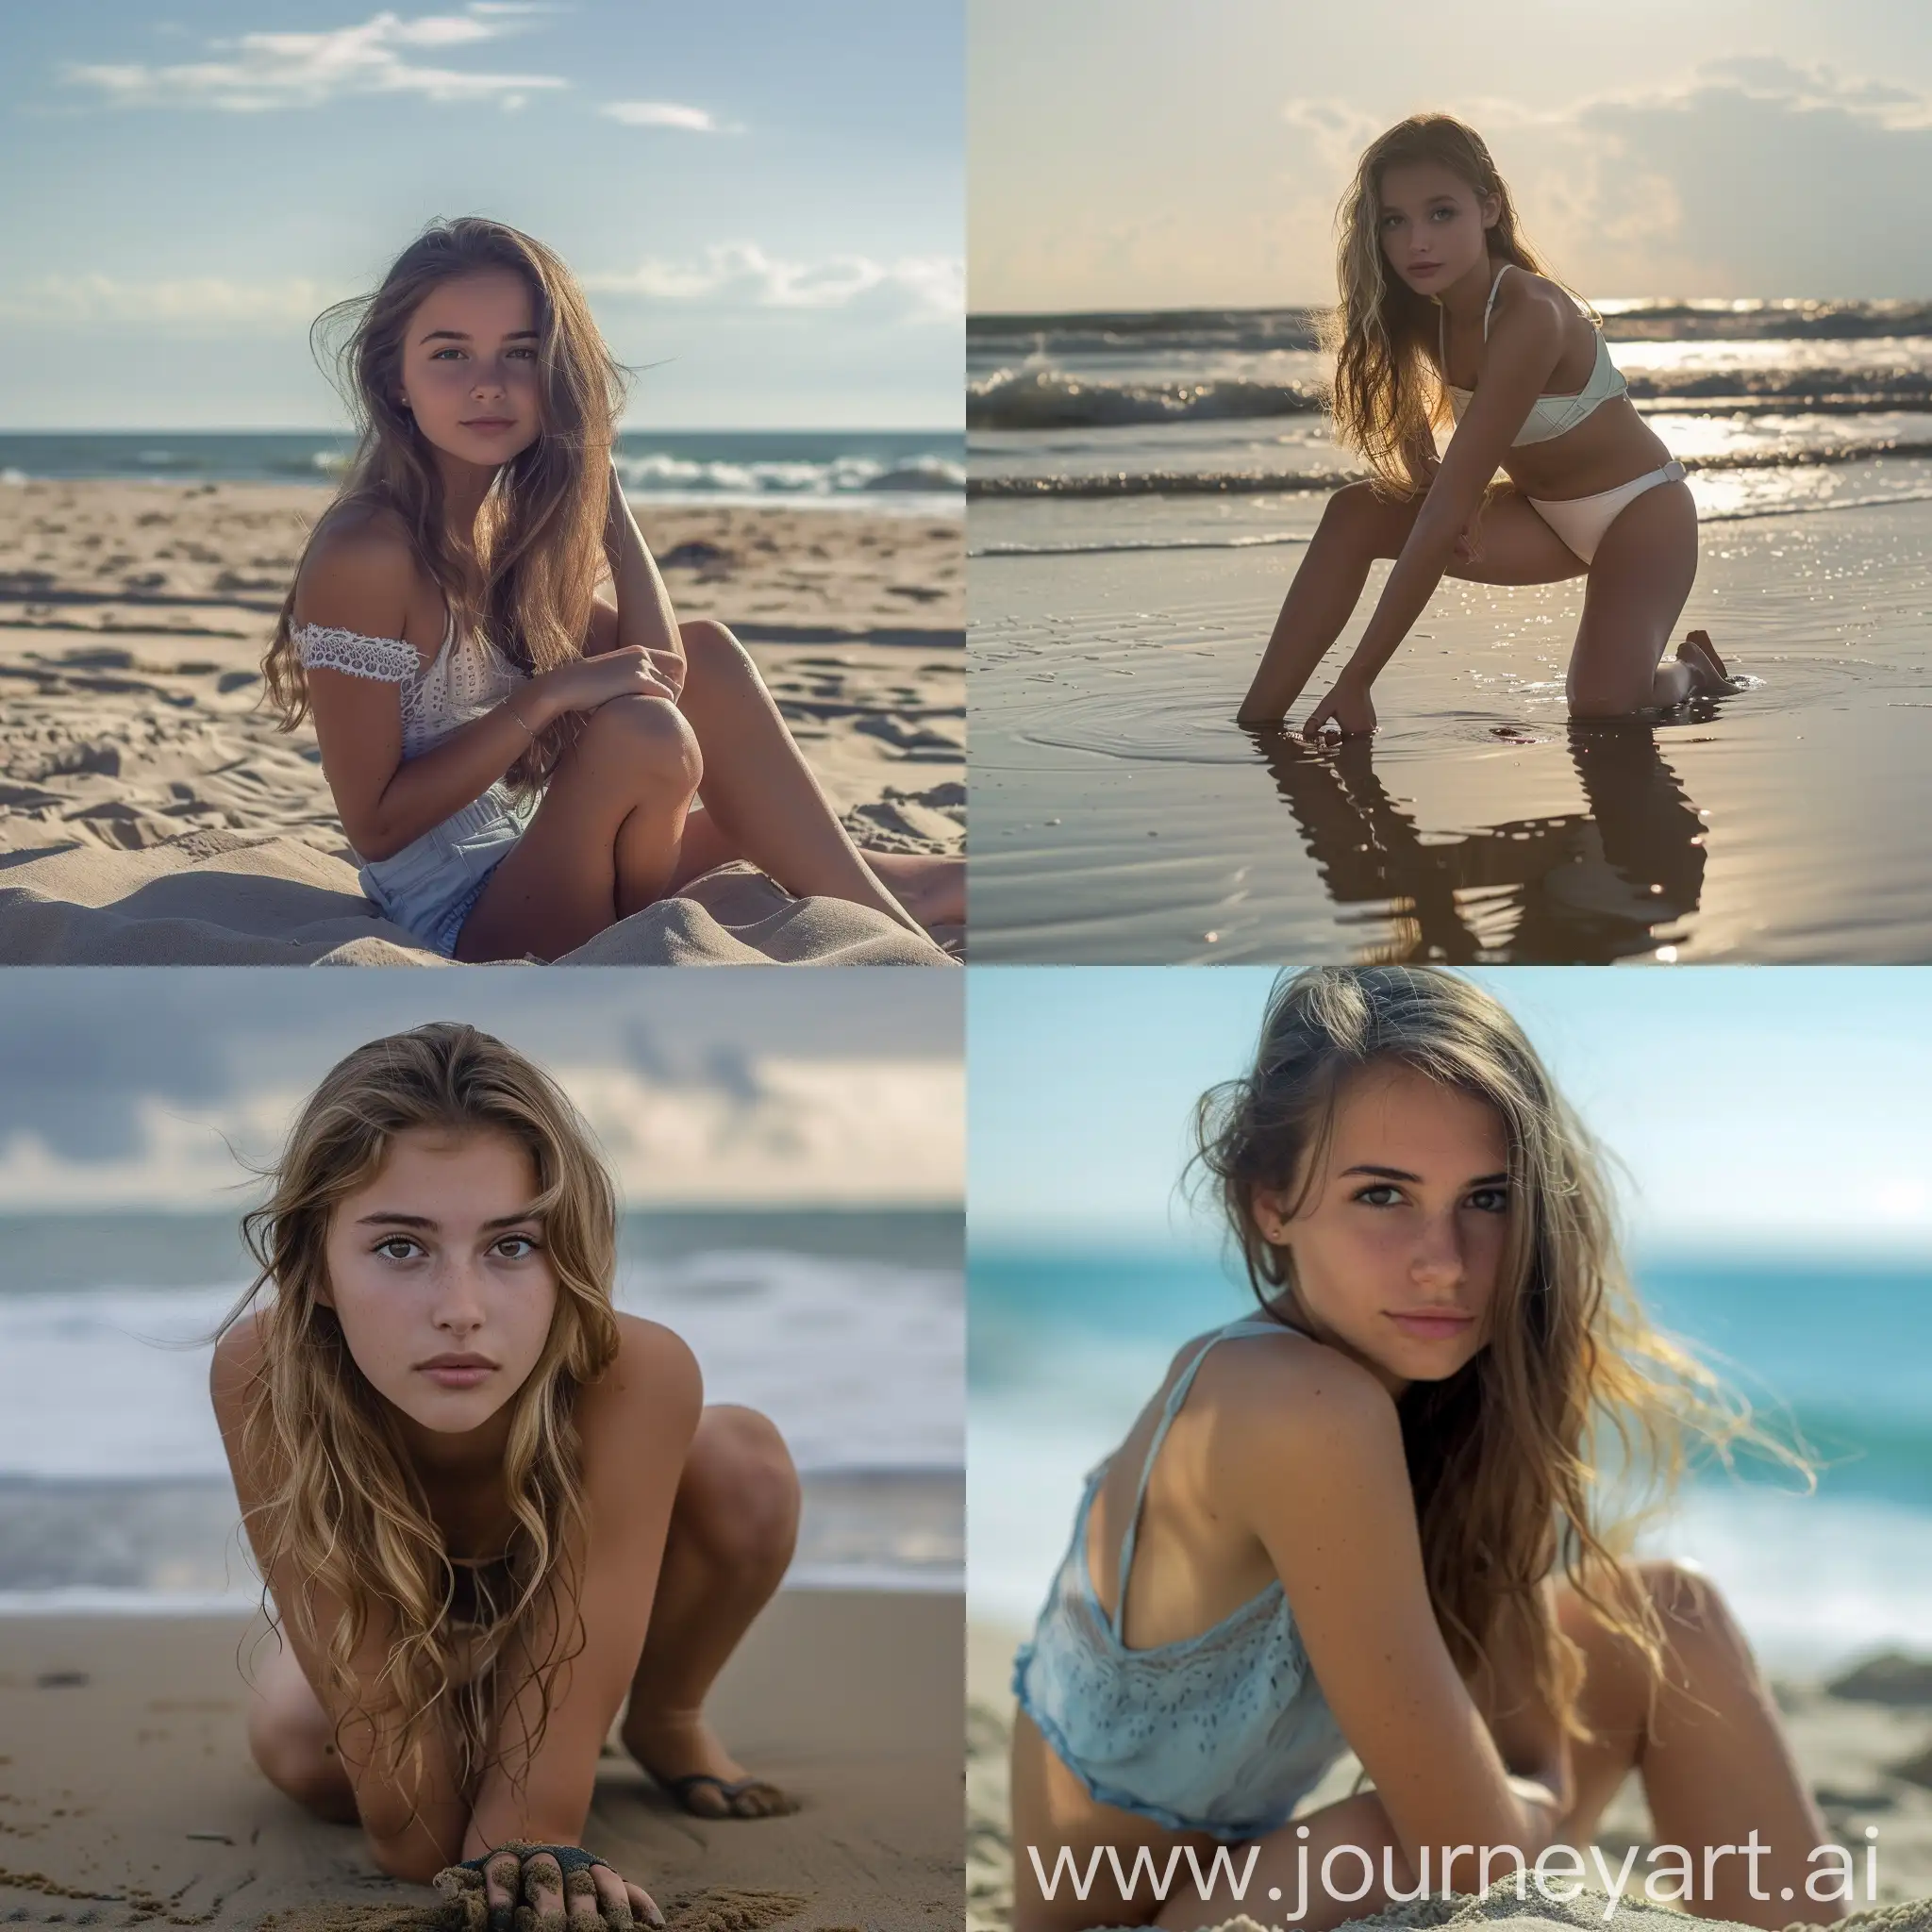 красивая девушка, 22 года, в интересной позе, на пляже